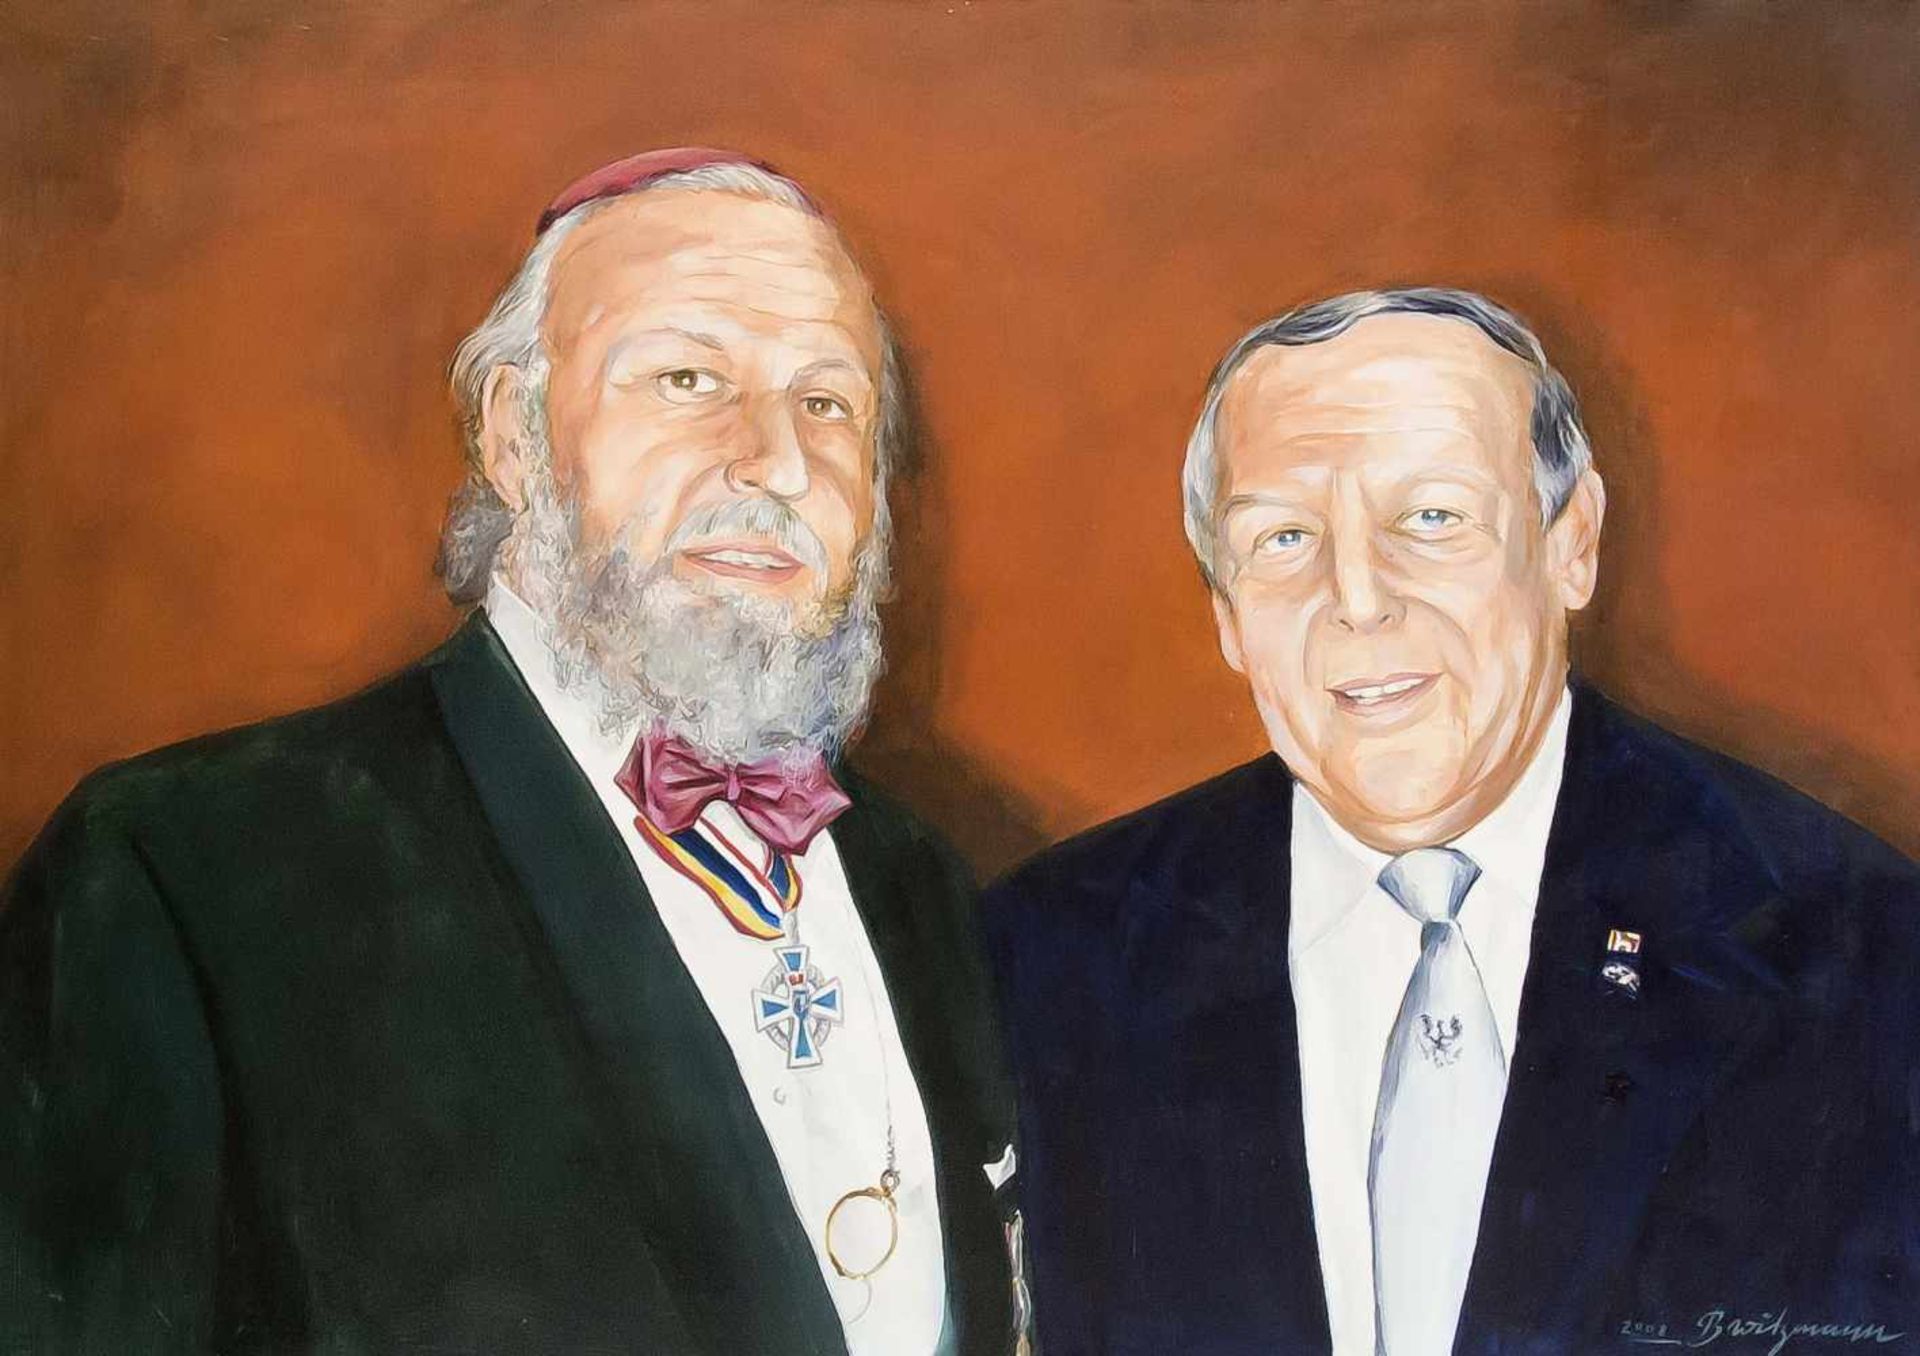 B. Witzmann, Maler des 21. Jh., Doppelportrait zweier hochrangiger Juden mitAuszeichnungen. Öl auf